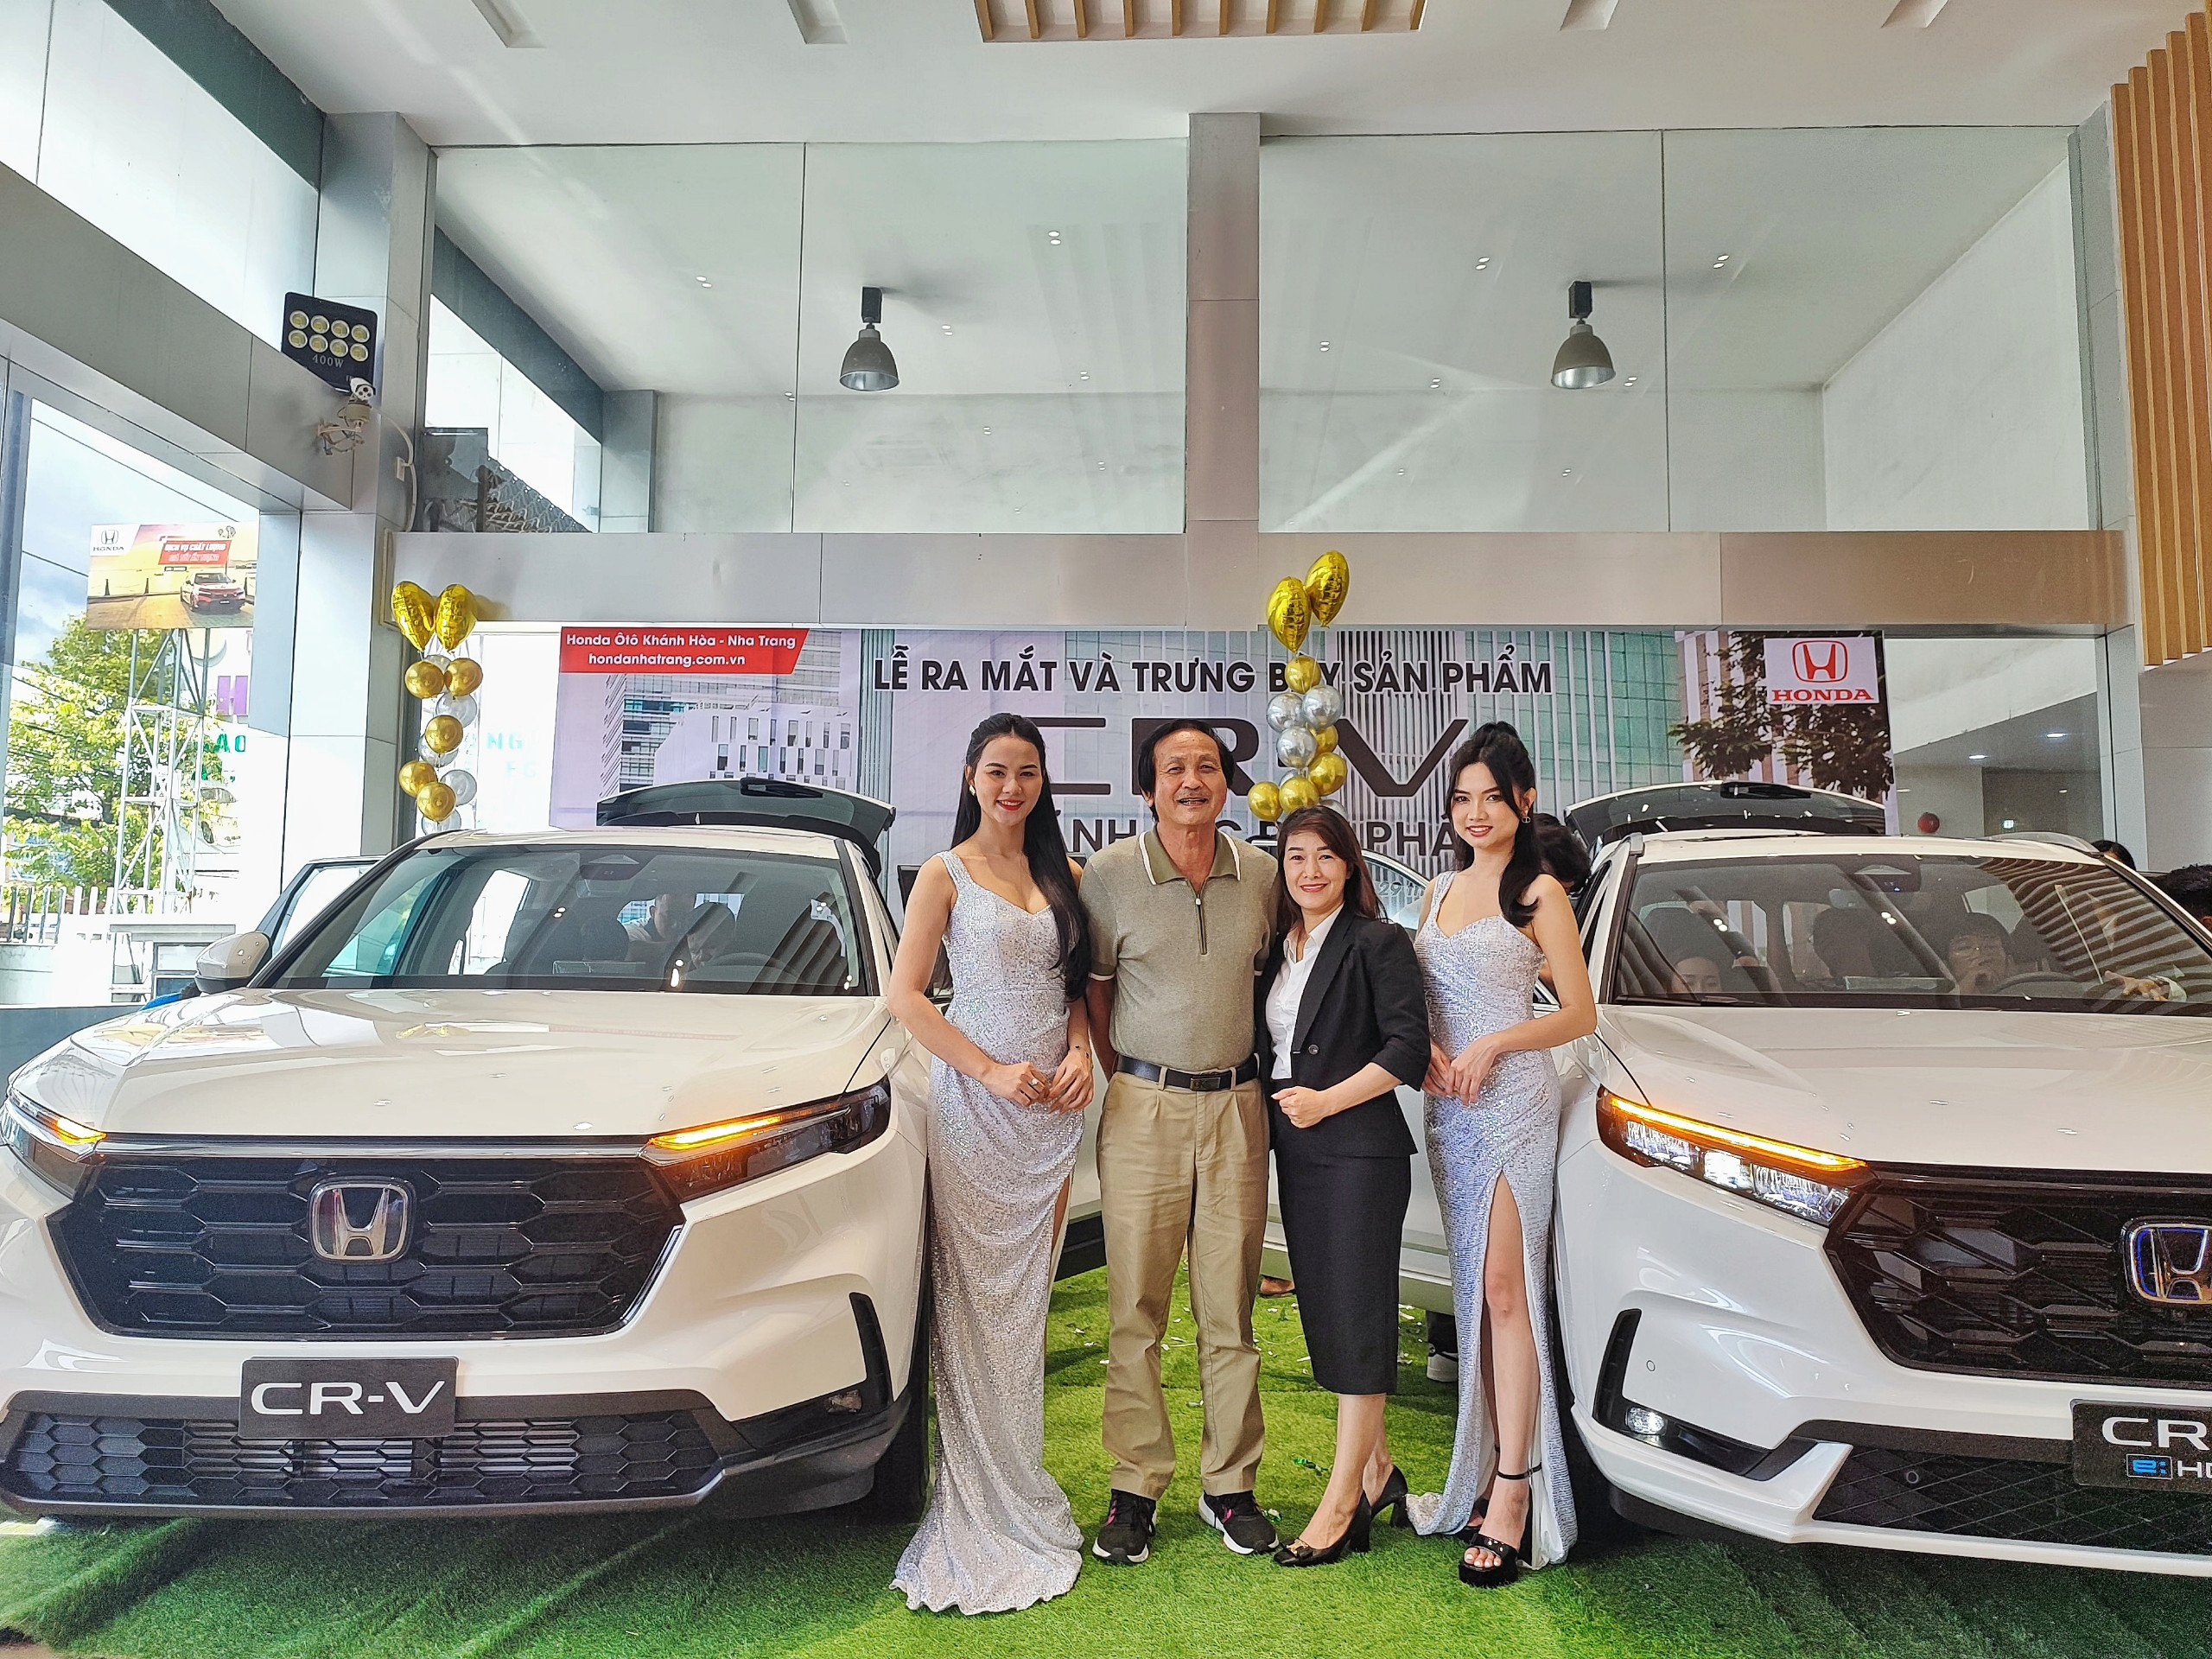 “Lễ ra mắt Honda CR-V” tại Honda Ôtô Khánh Hòa – Nha Trang